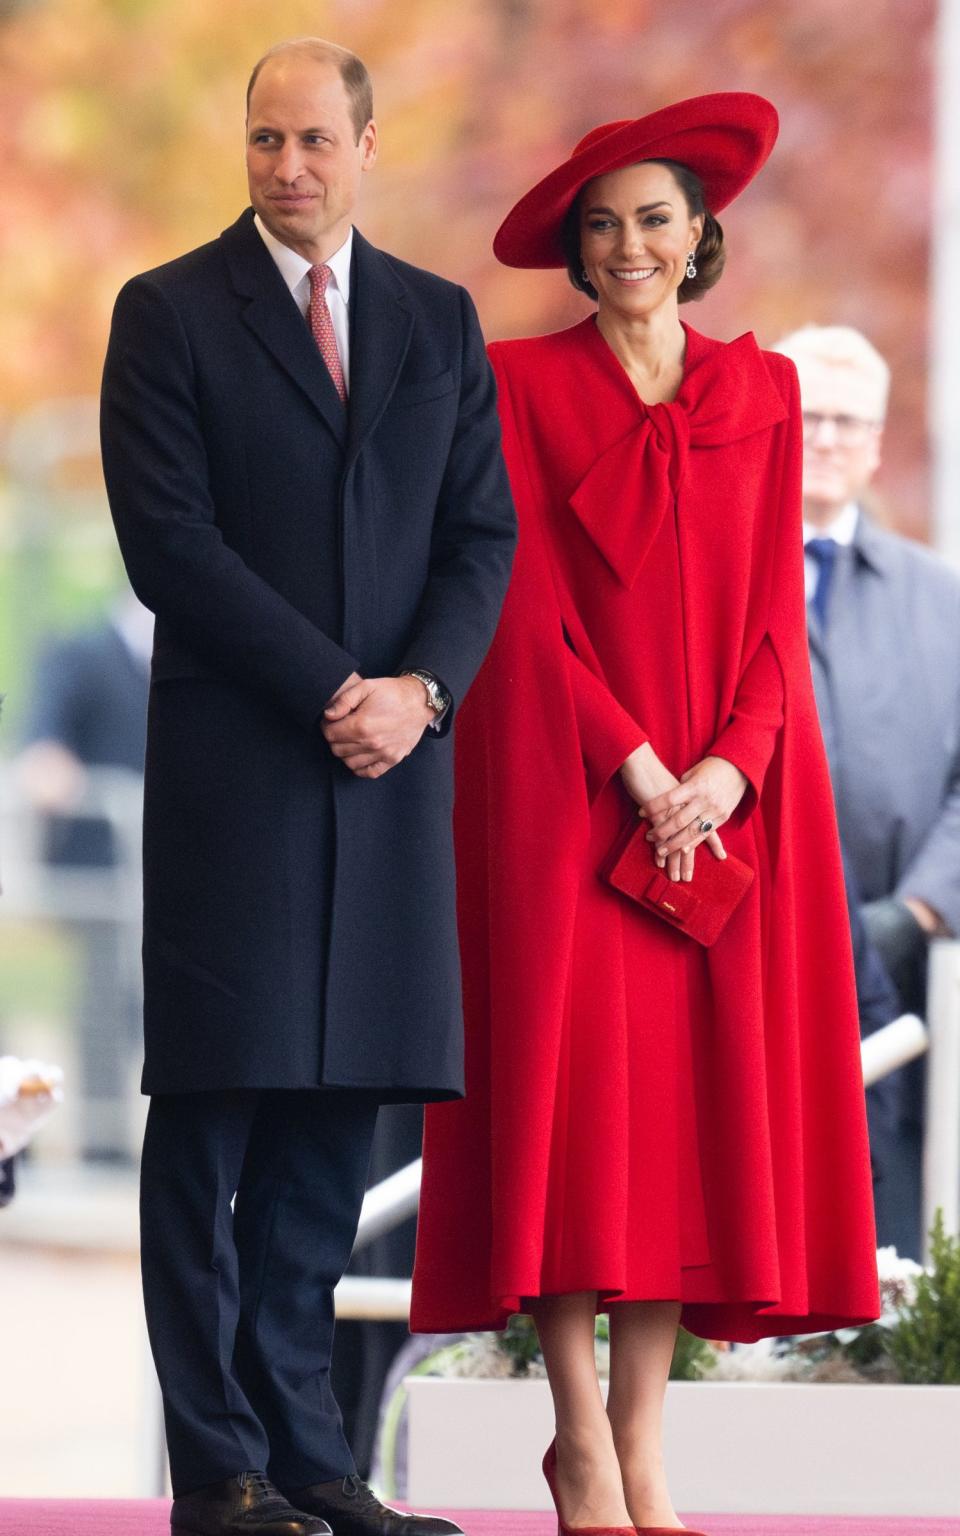 Η Catherine, Πριγκίπισσα της Ουαλίας παρευρίσκεται στο τελετουργικό καλωσόρισμα του Προέδρου και της Πρώτης Κυρίας της Δημοκρατίας της Κορέας στην παρέλαση Horse Guards στο Λονδίνο, Αγγλία, στις 21 Νοεμβρίου 2023